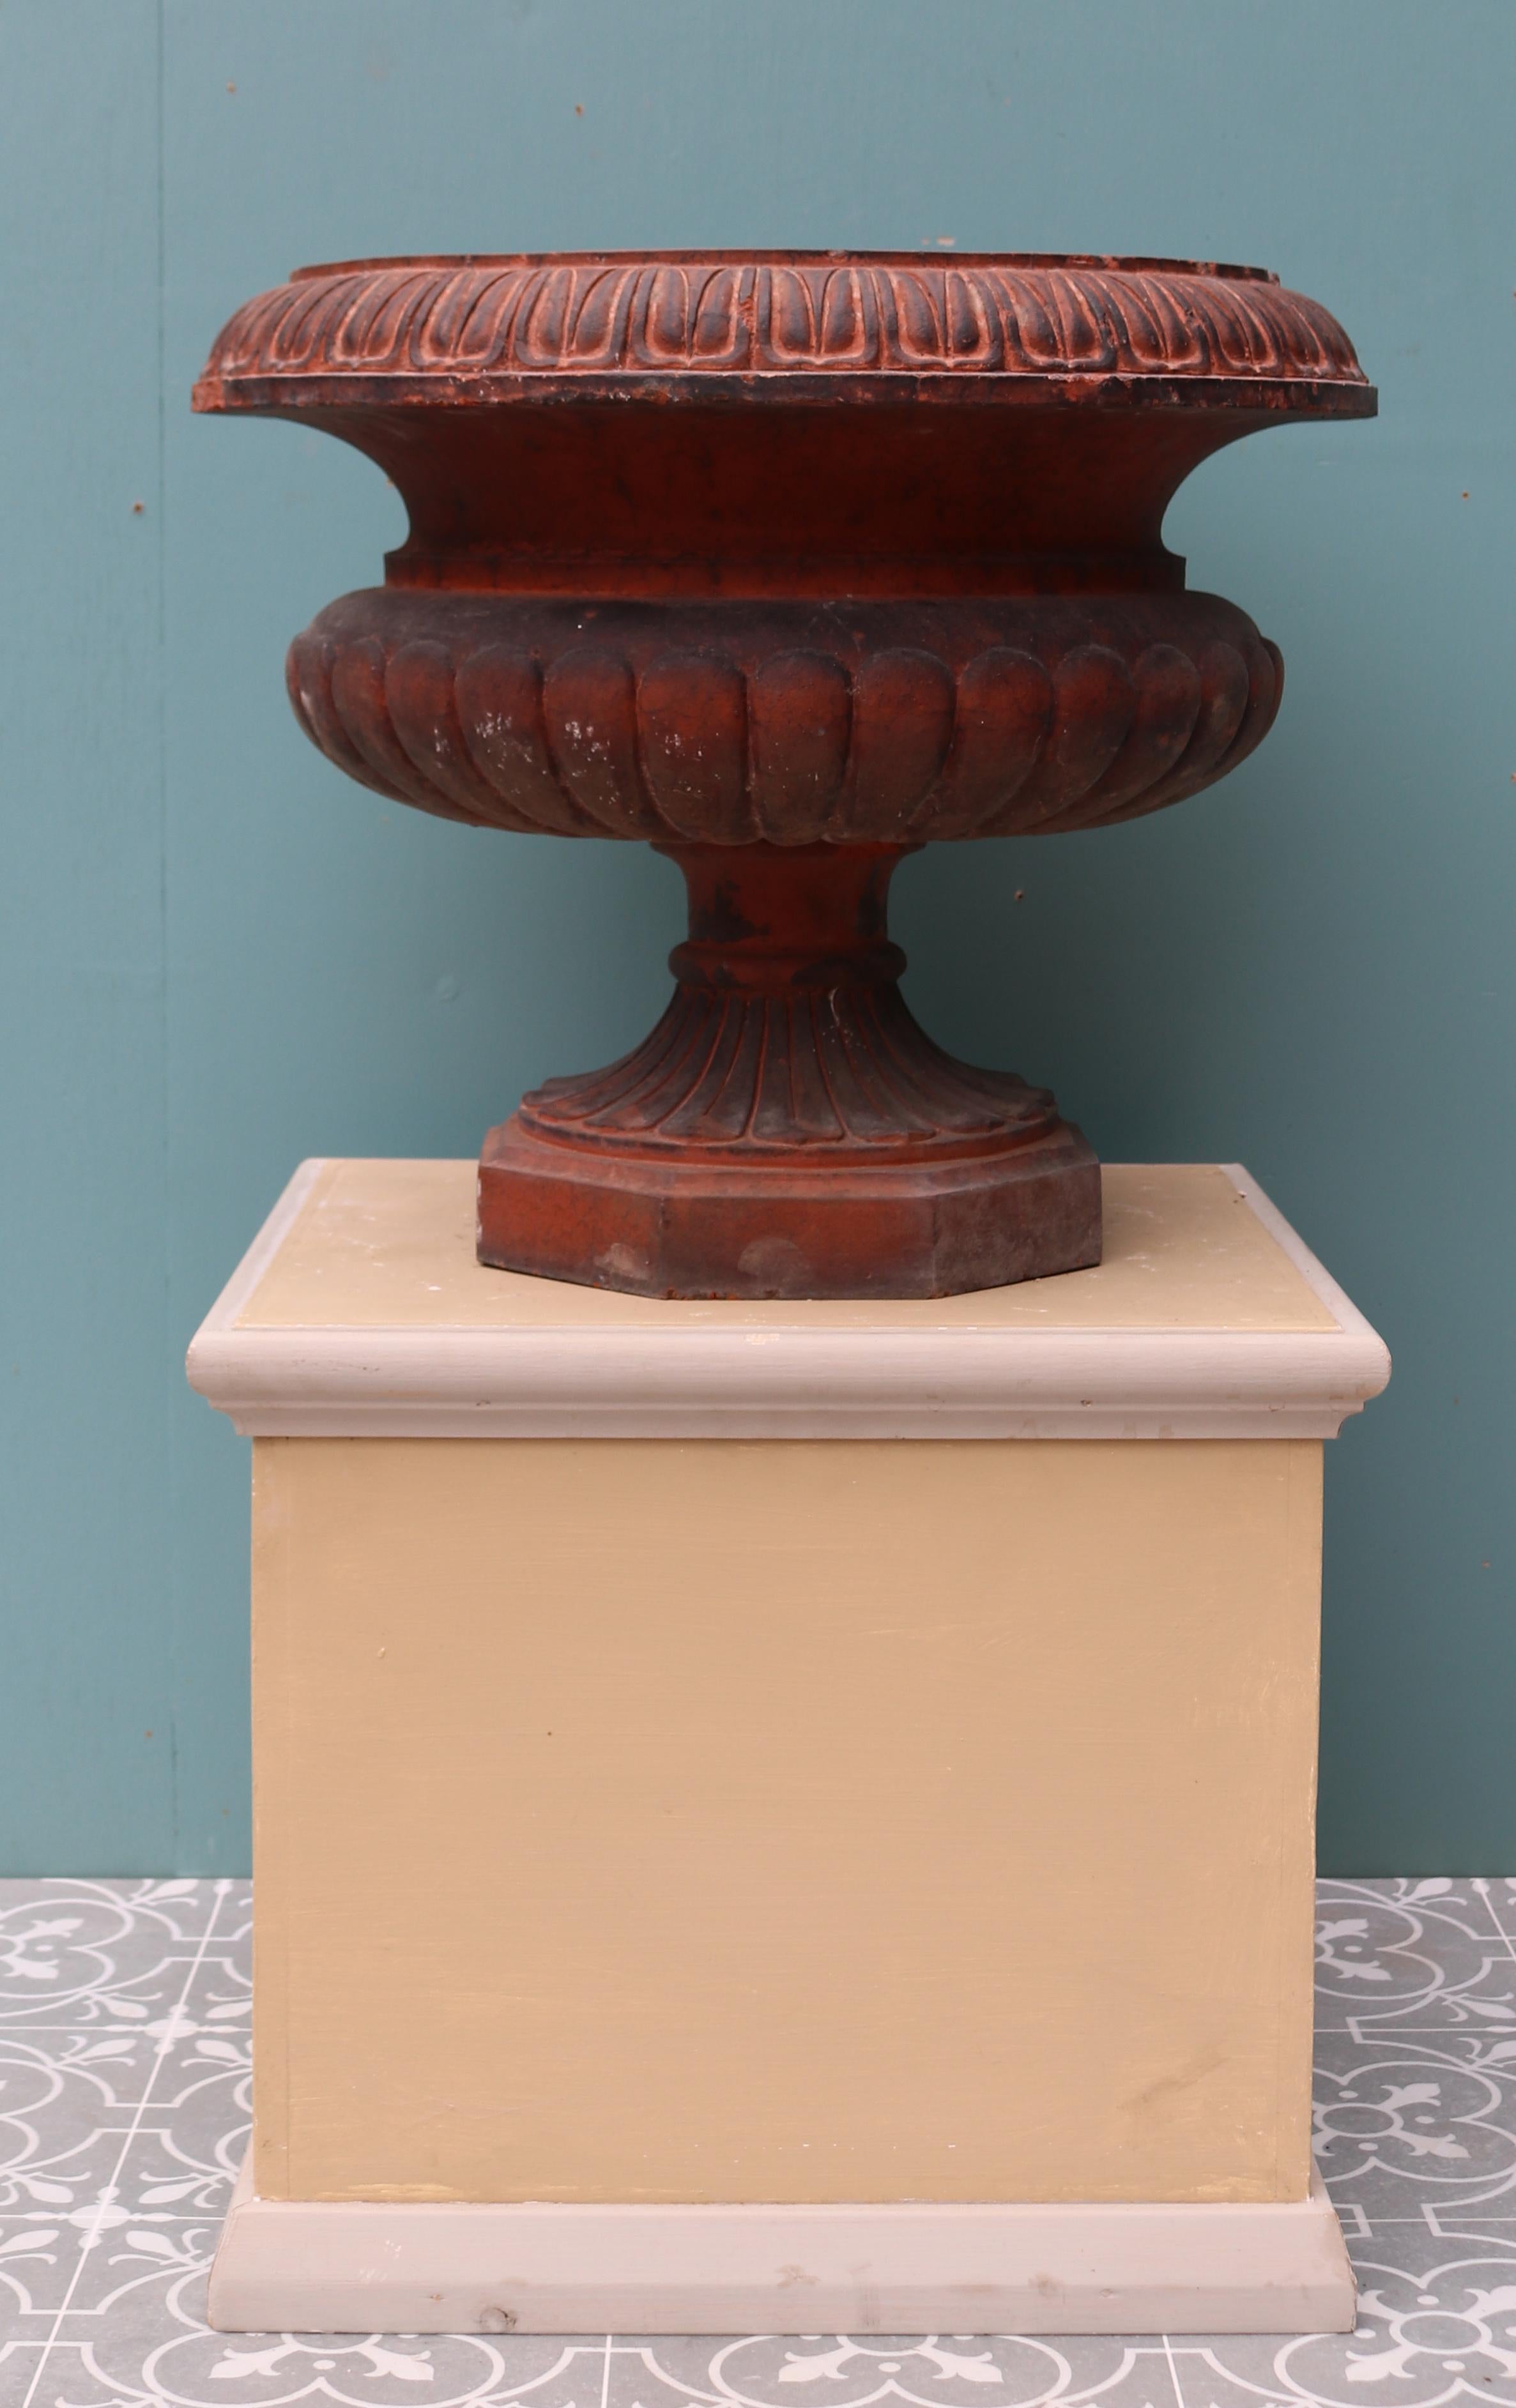 Eine rote Terrakotta-Urne im viktorianischen Stil.

Zusätzliche Abmessungen

Sockel 24 x 24 cm.